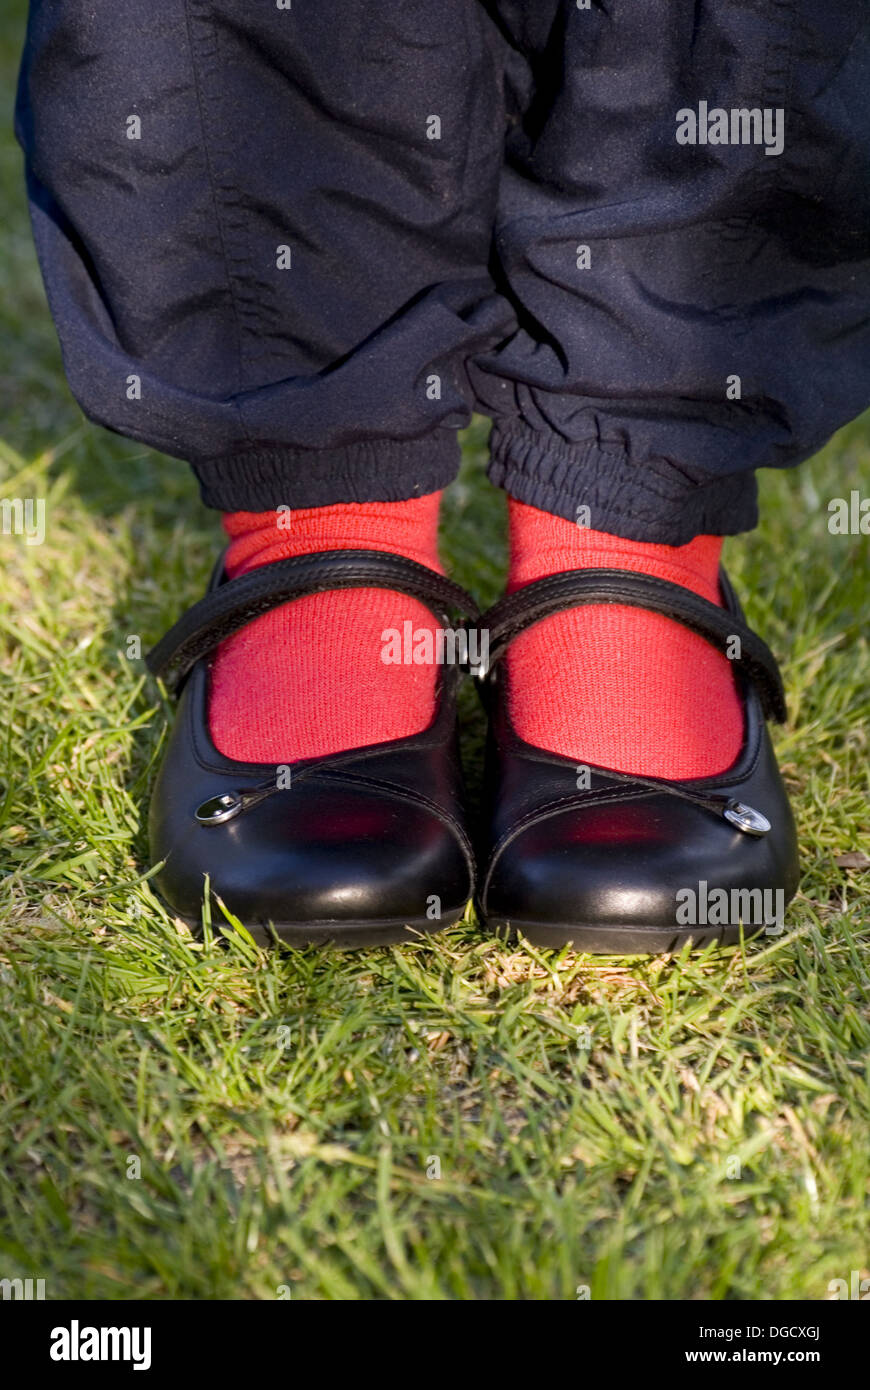 Niña calcetines rojos stock - Alamy